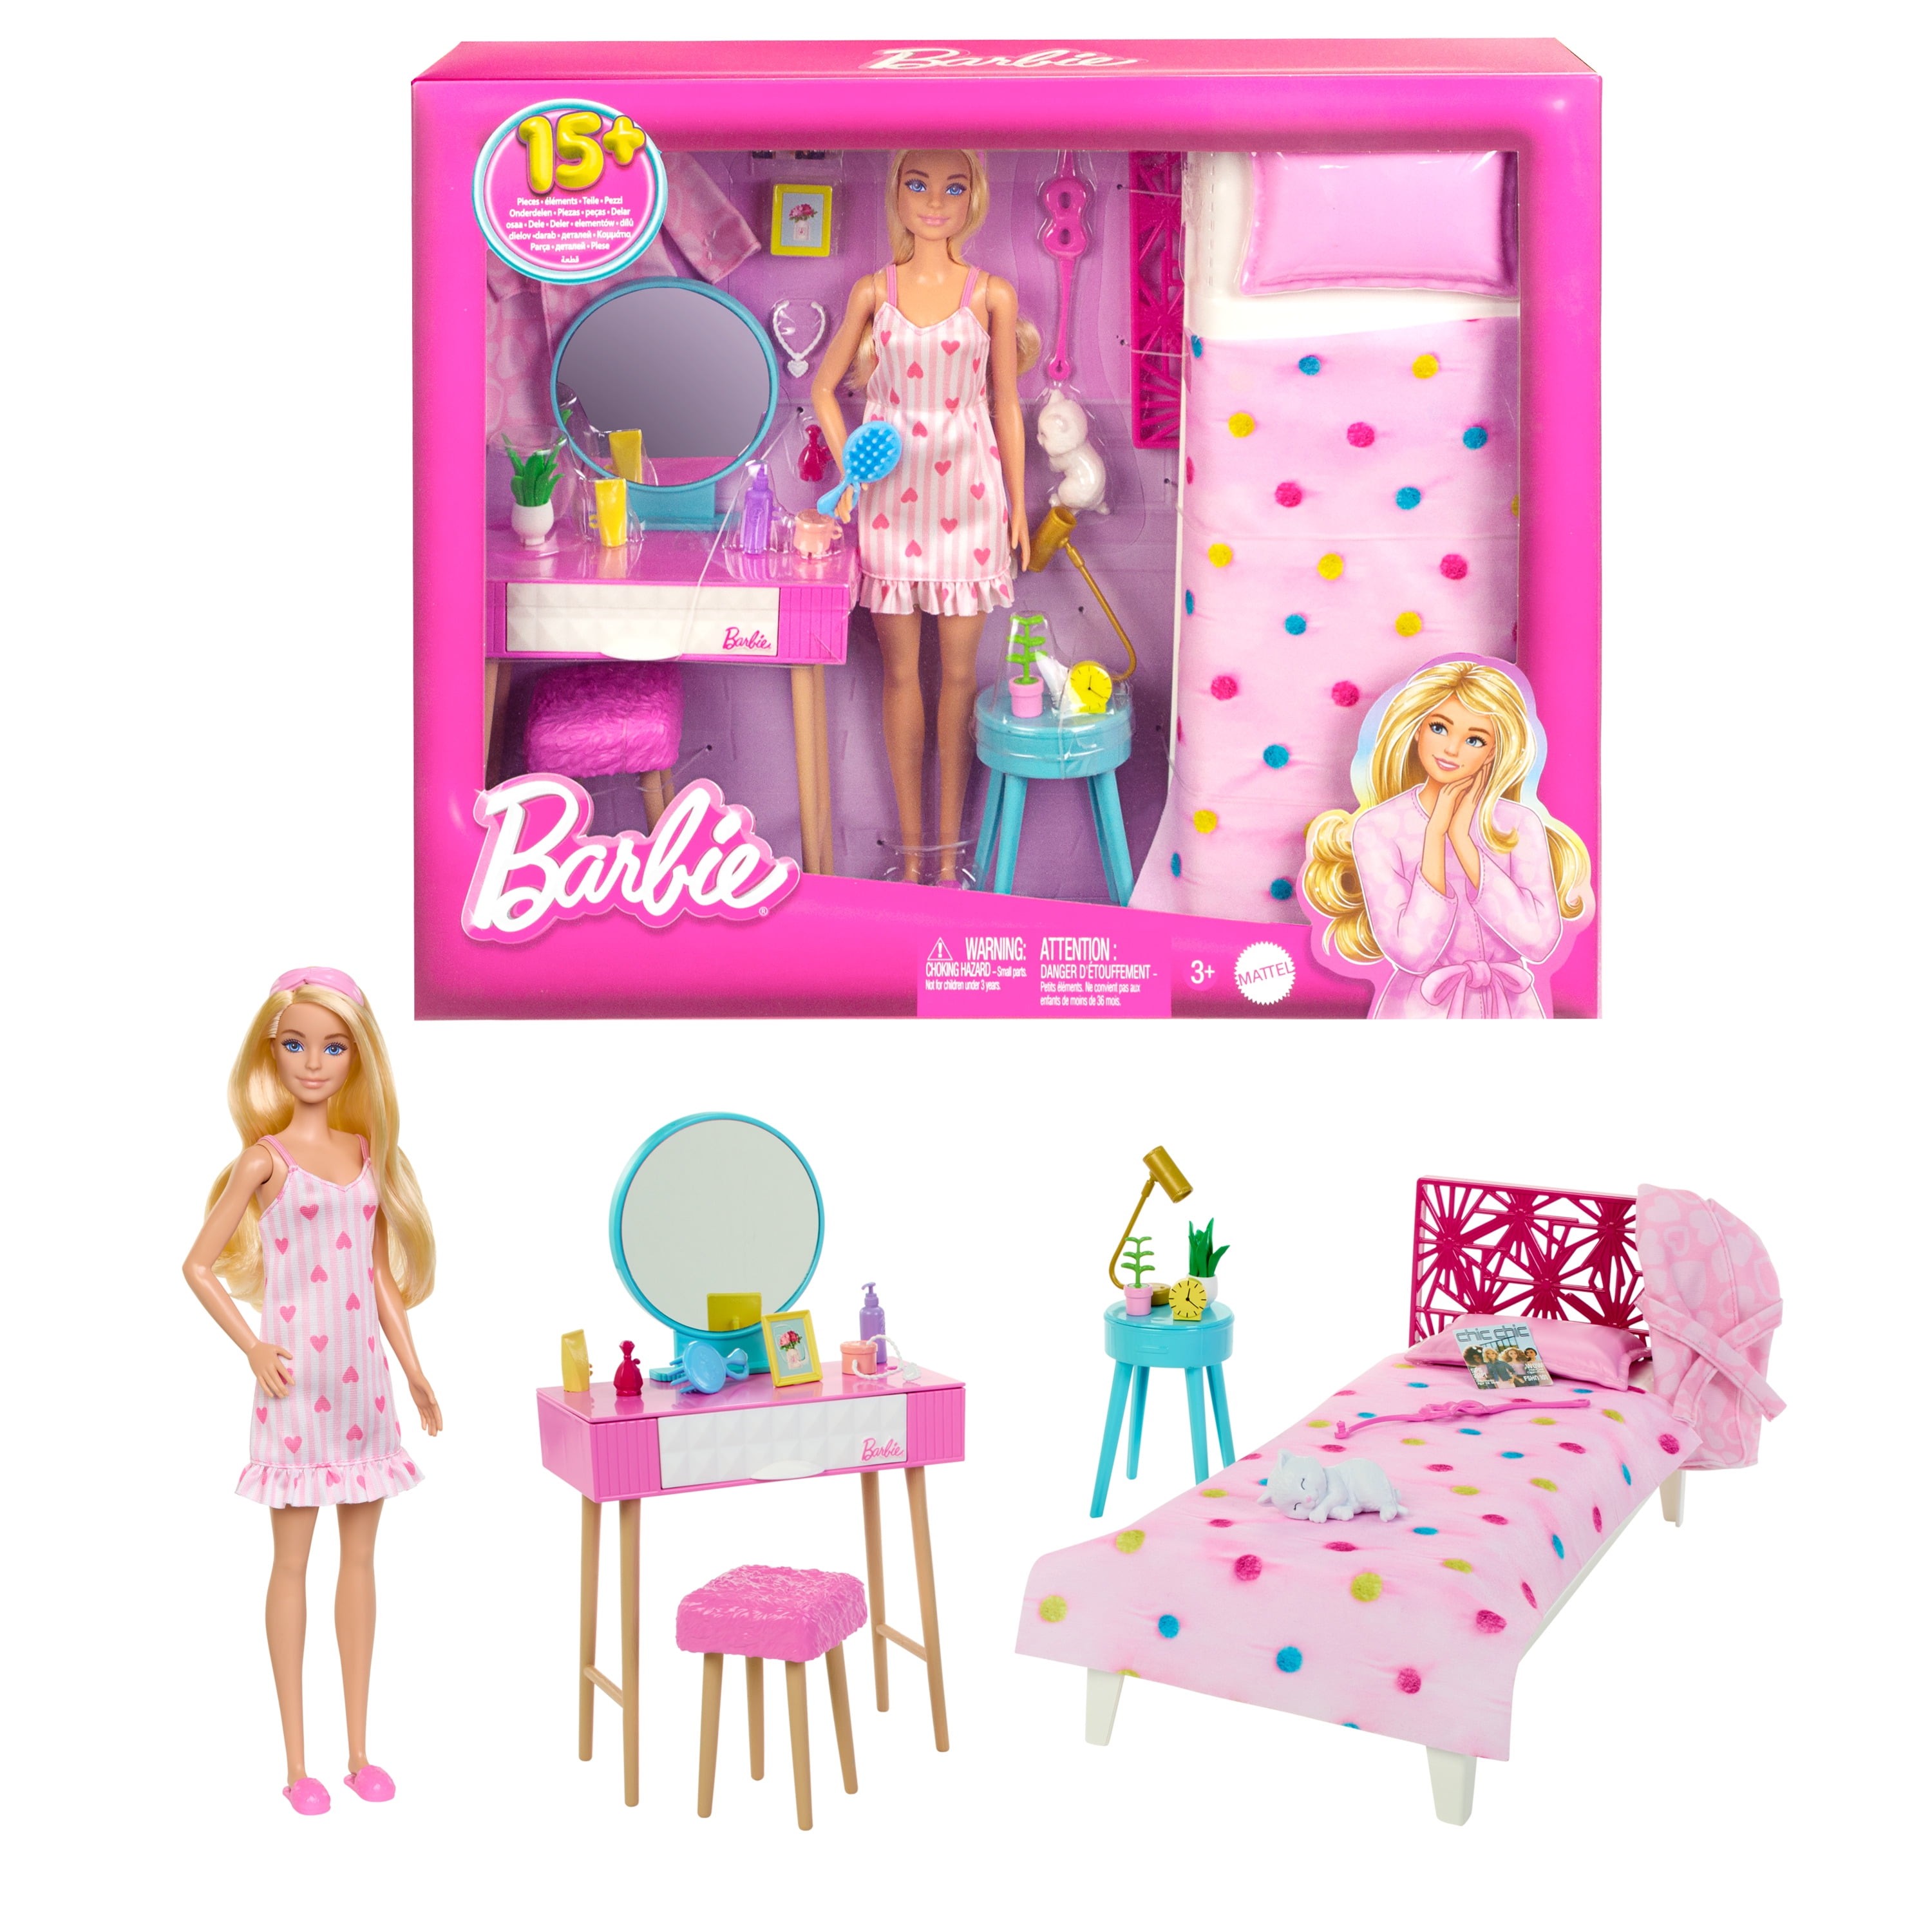 Home made Barbie accessory organizer 